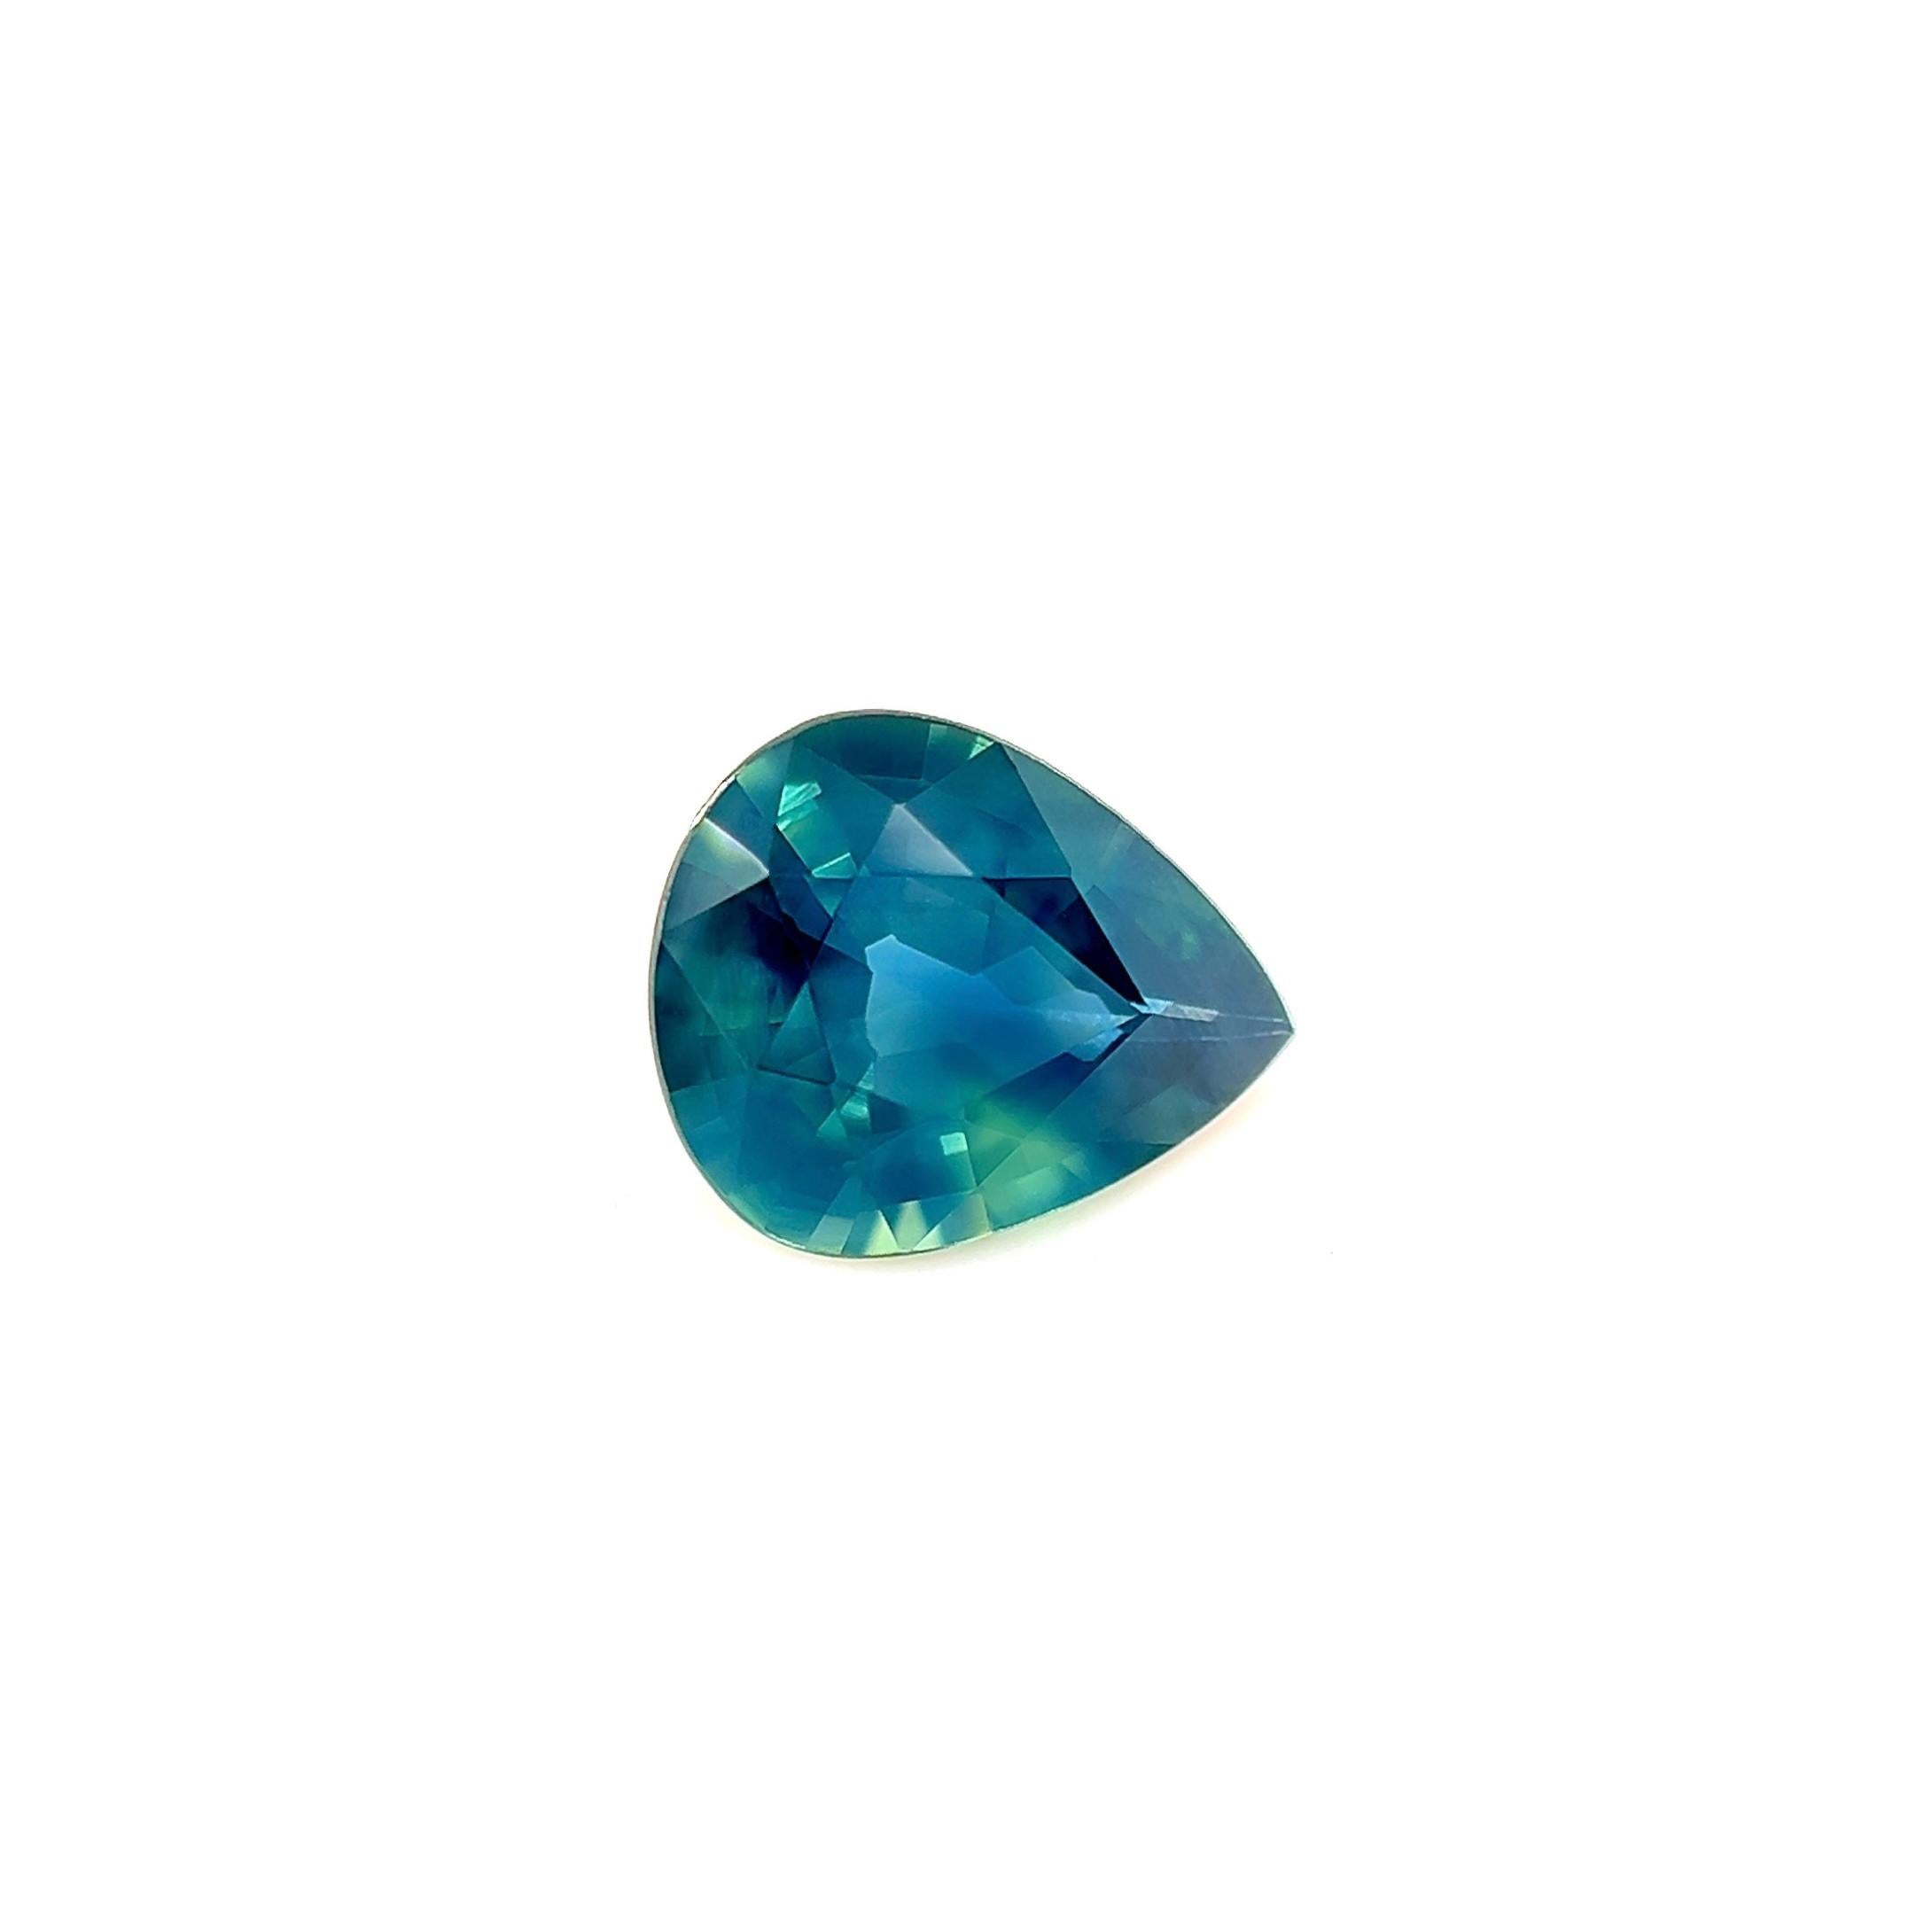 Saphir naturel unique taille poire bleu sarcelle non traité de 1,13 carat certifié par le GIA

Saphir fin vert bleu sarcelle naturel certifié par le GIA.
Saphir de qualité supérieure d'une couleur bleu sarcelle vert unique.
1,13 carat avec une très